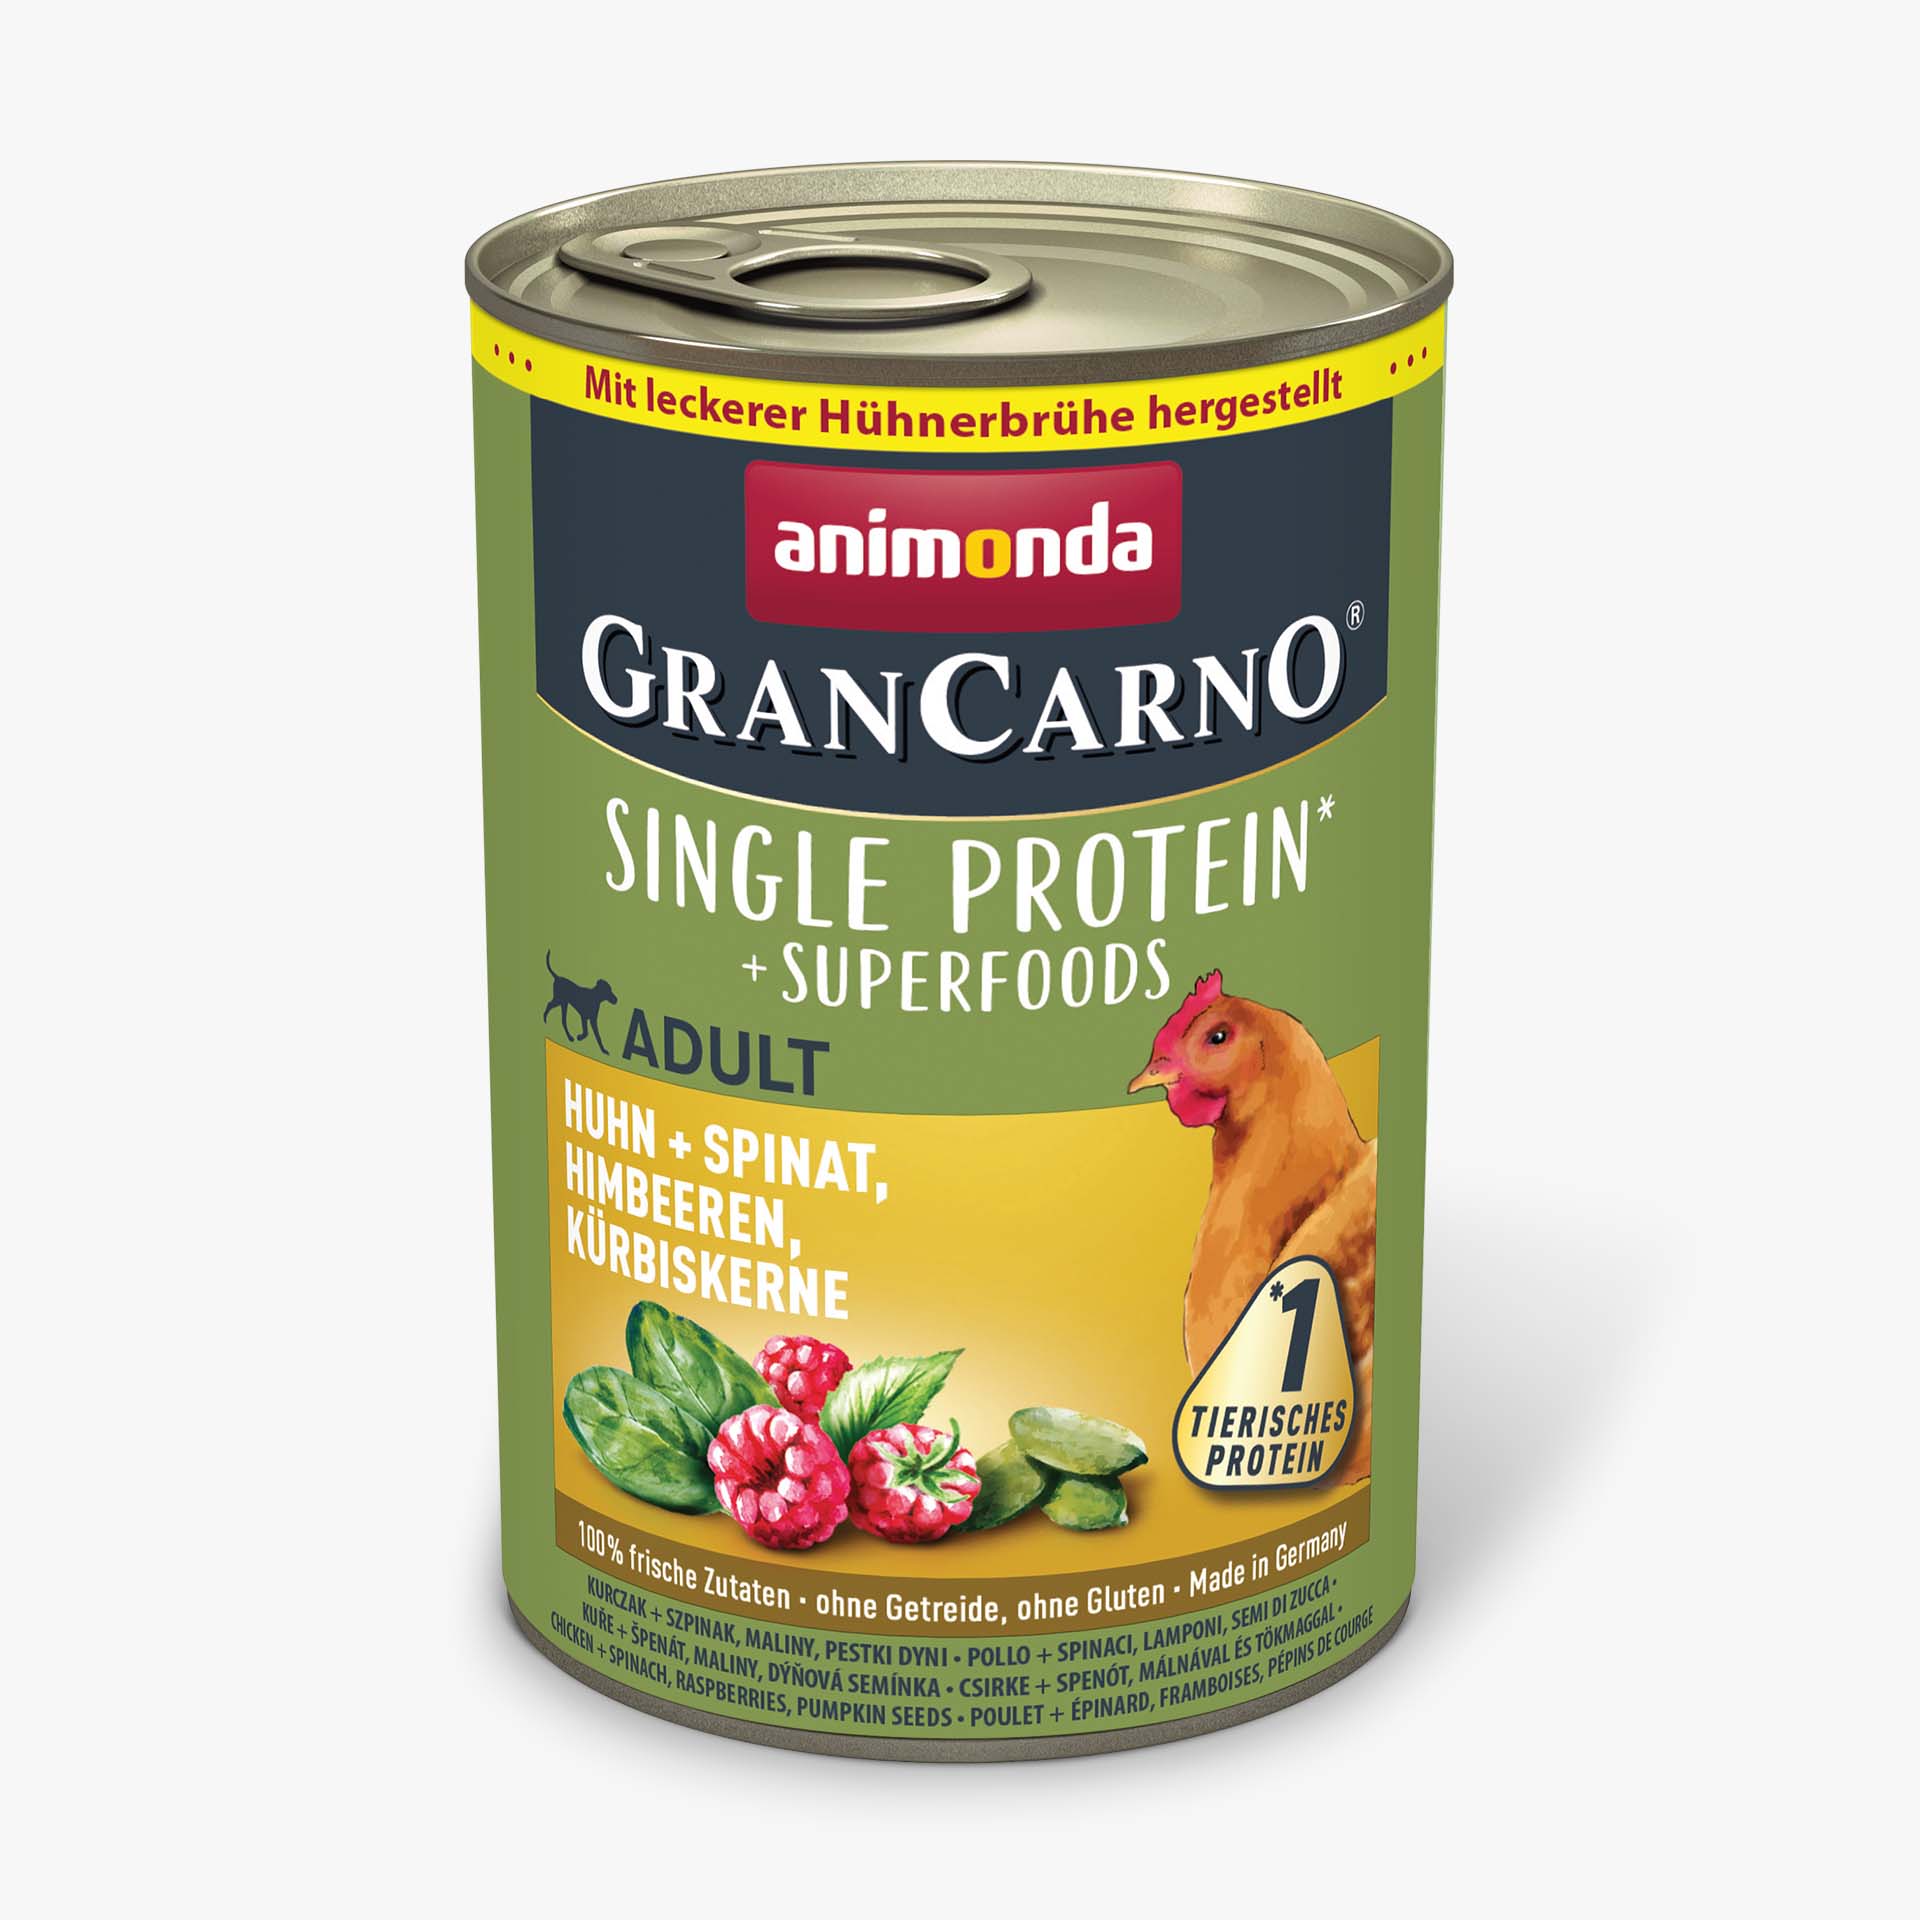 GranCarno chicken + spinach, raspberries, pumpkin seeds Superfoods